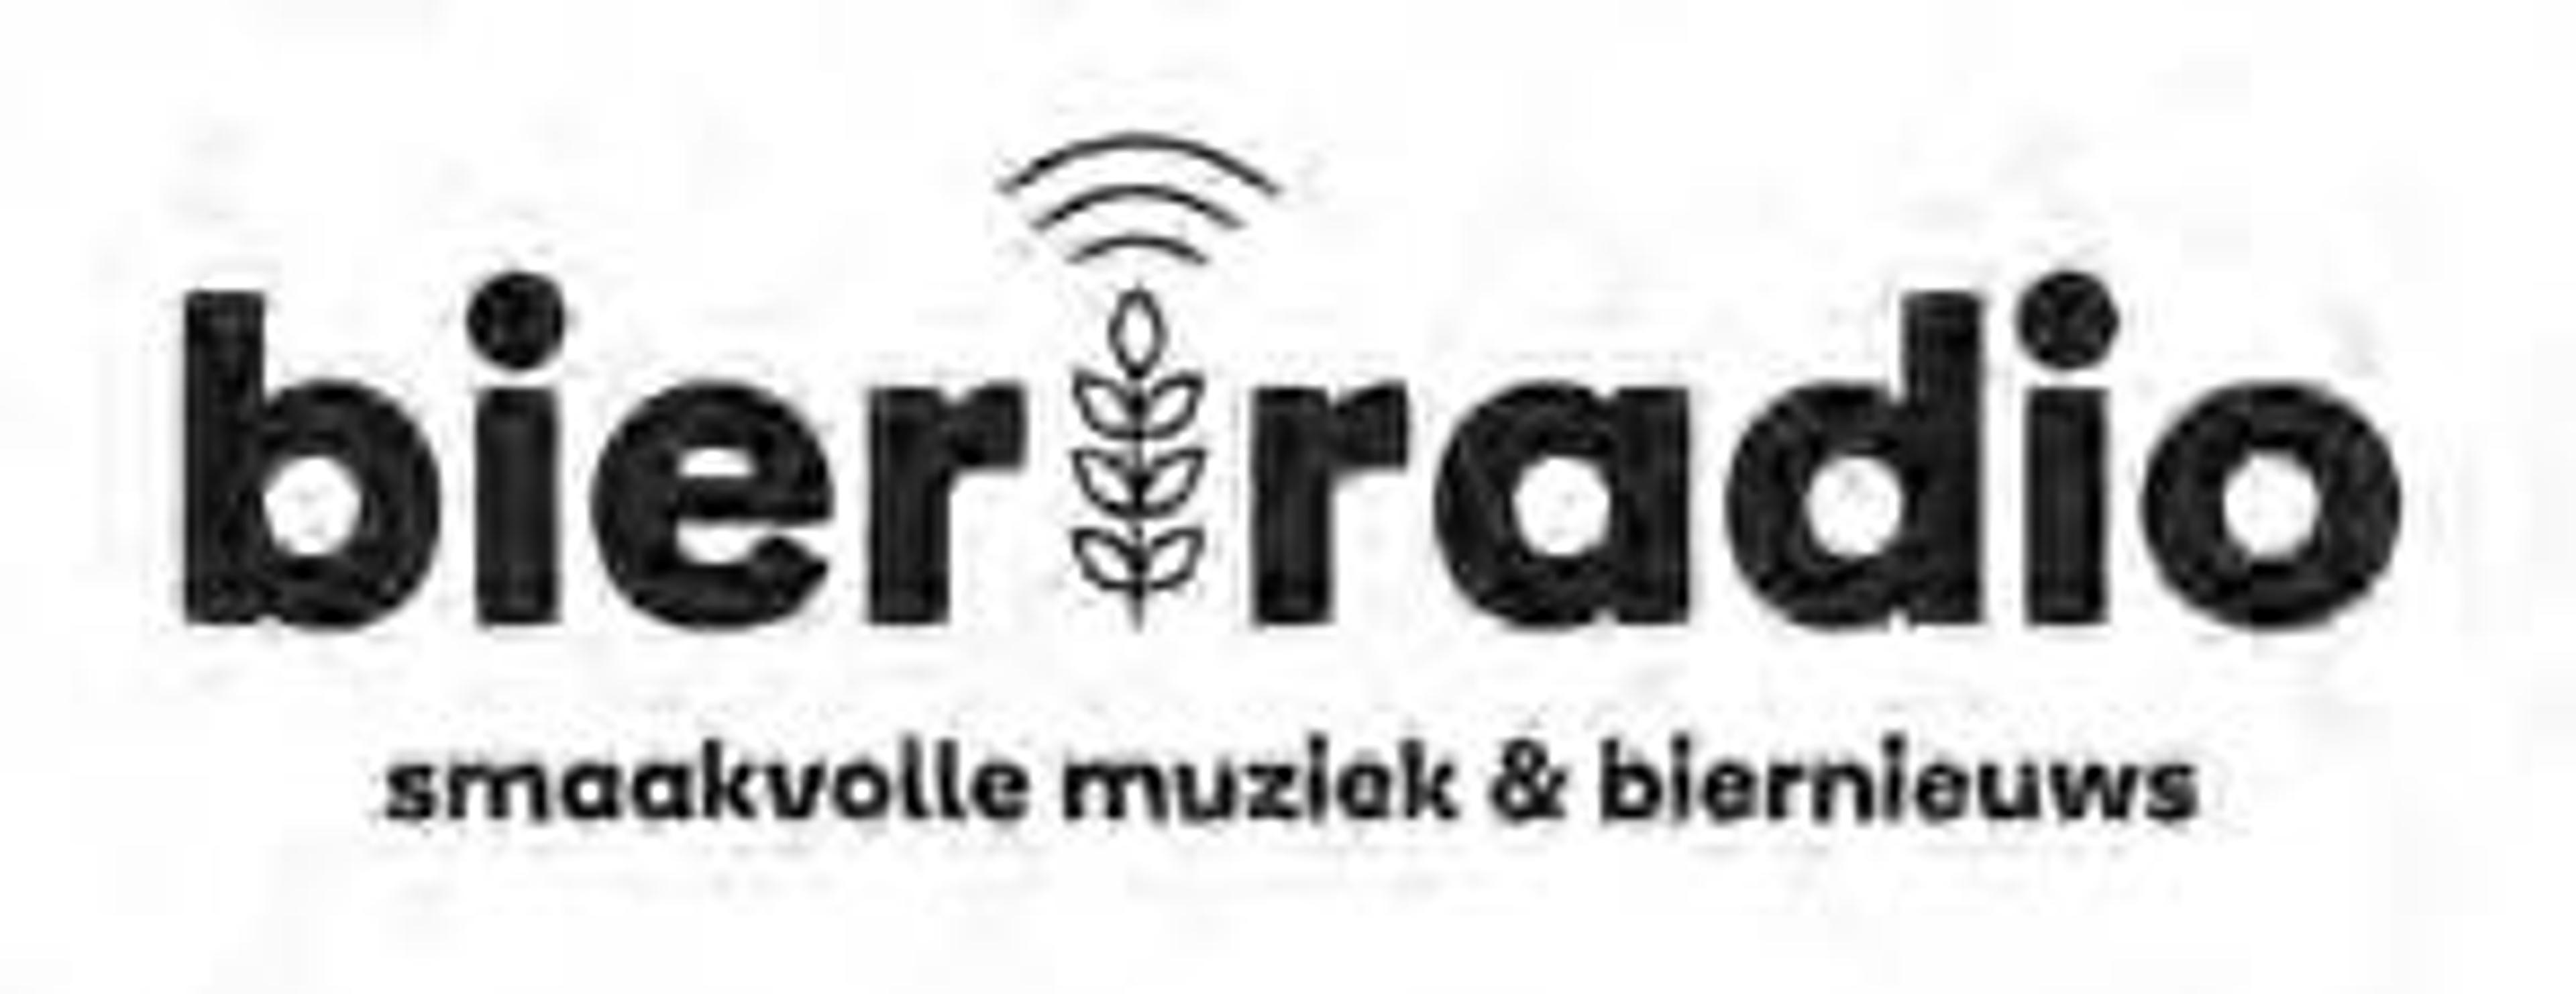 Bierradio.nl, radiozender voor de bierliefhebber